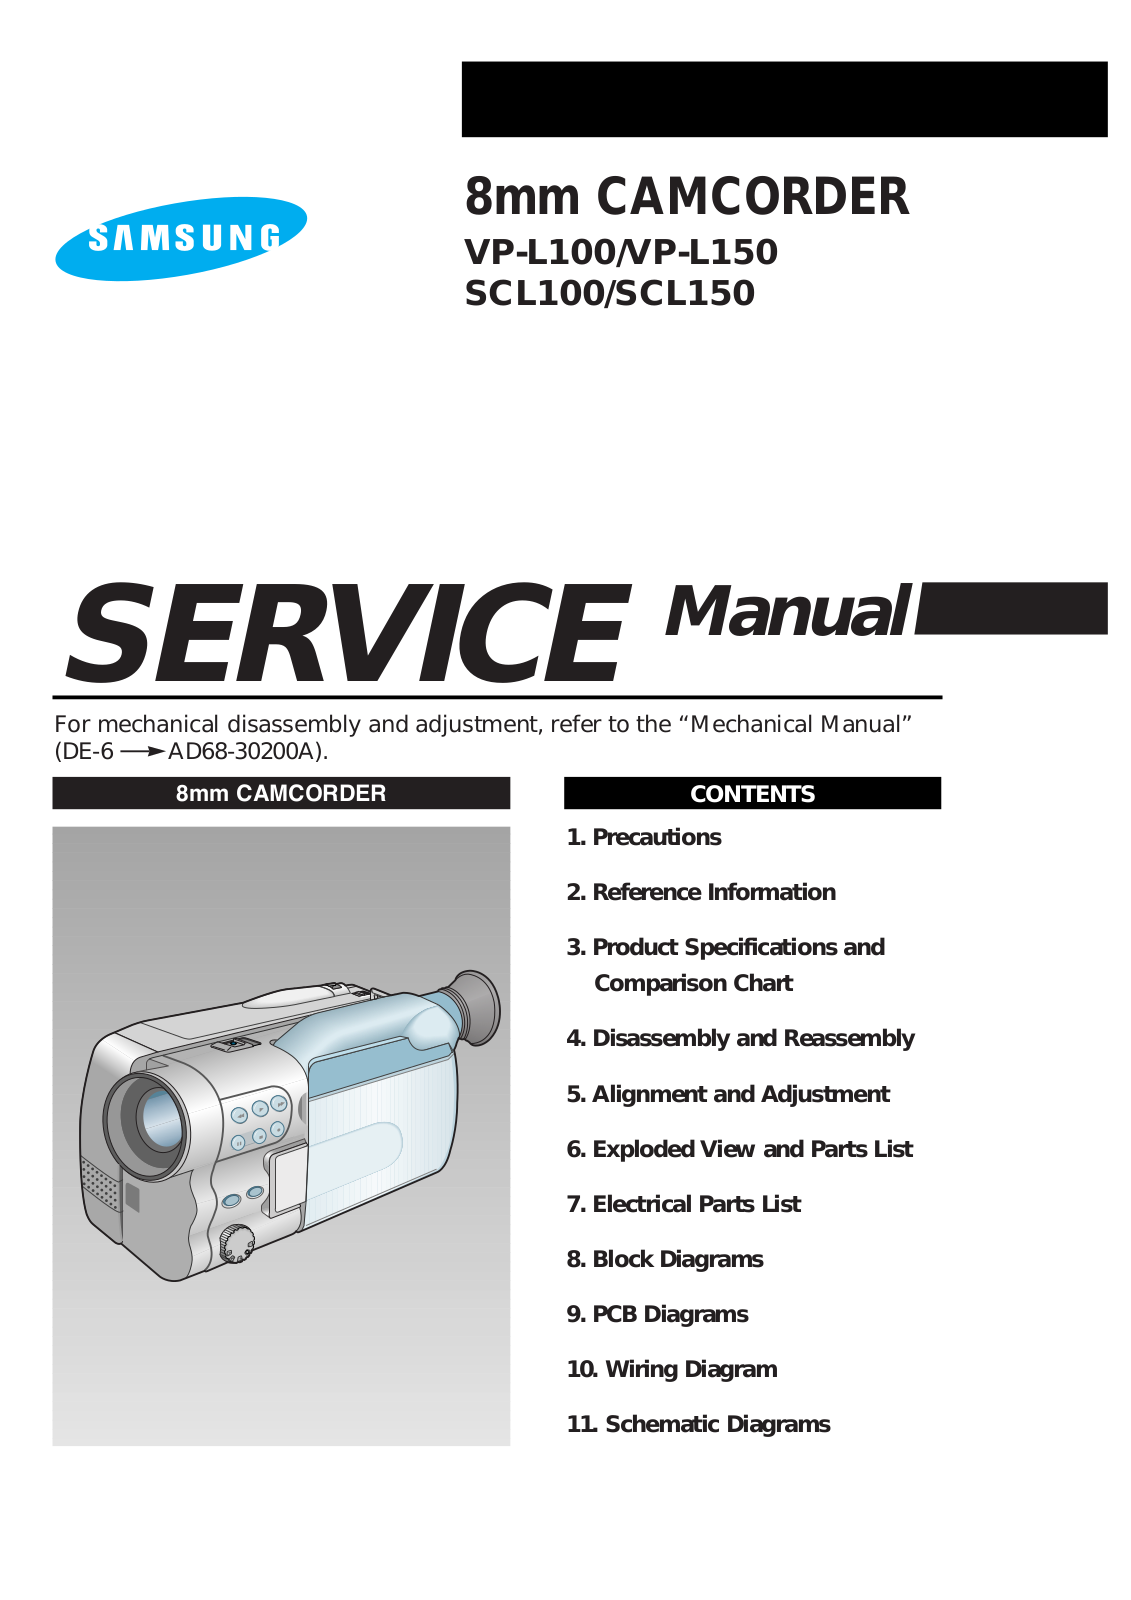 Samsung VP-L10, VP-L150, SCL100, SCL150 Service Manual